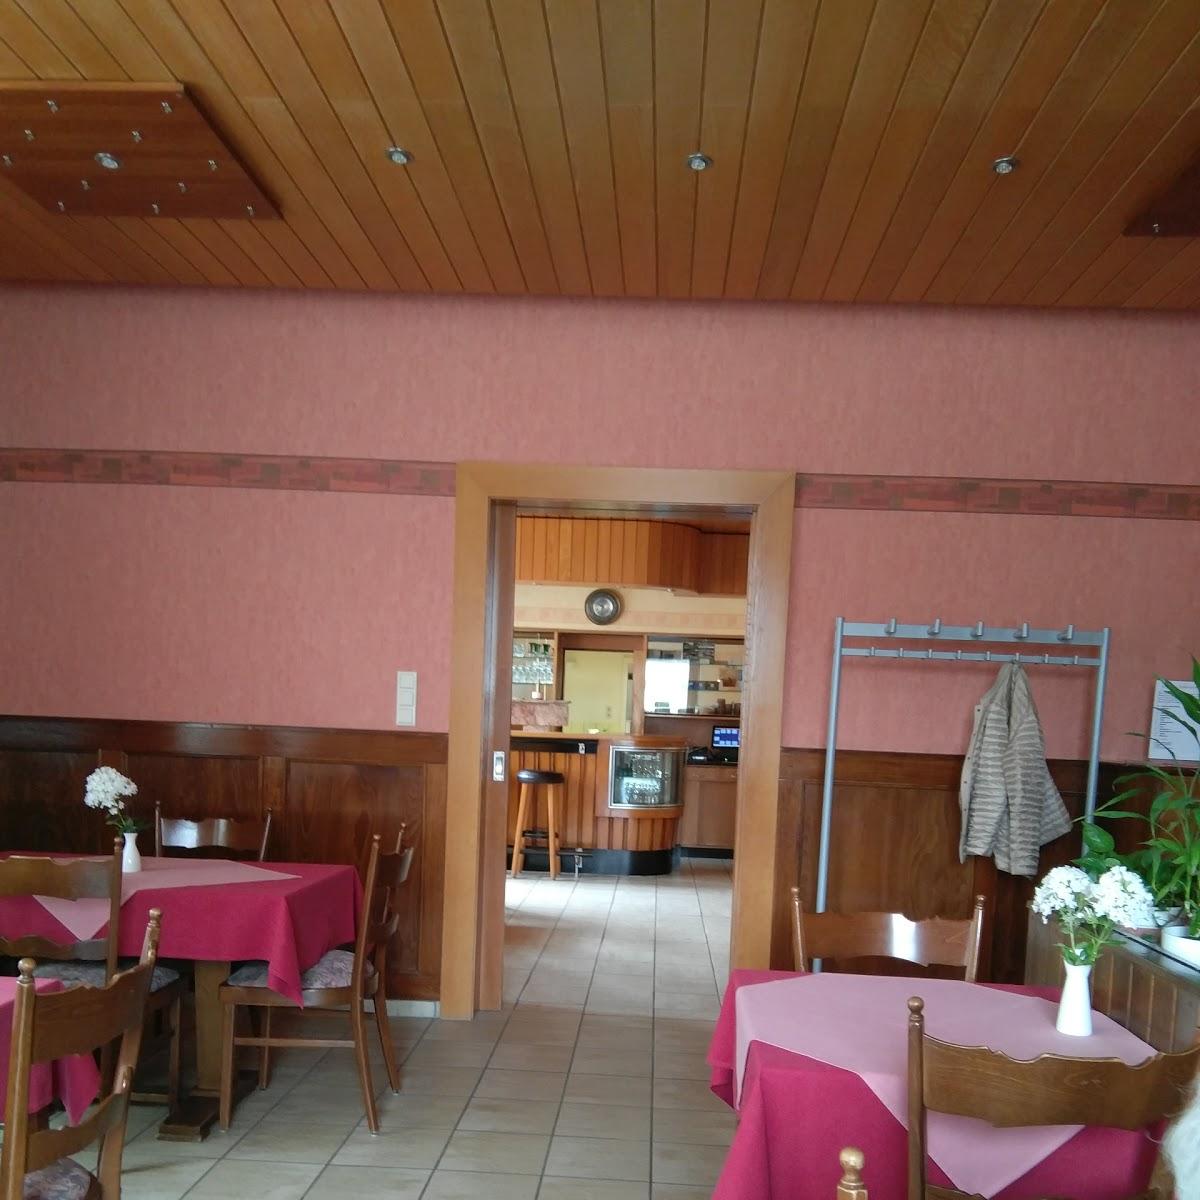 Restaurant "Landgasthaus Zur Linde" in Giesen